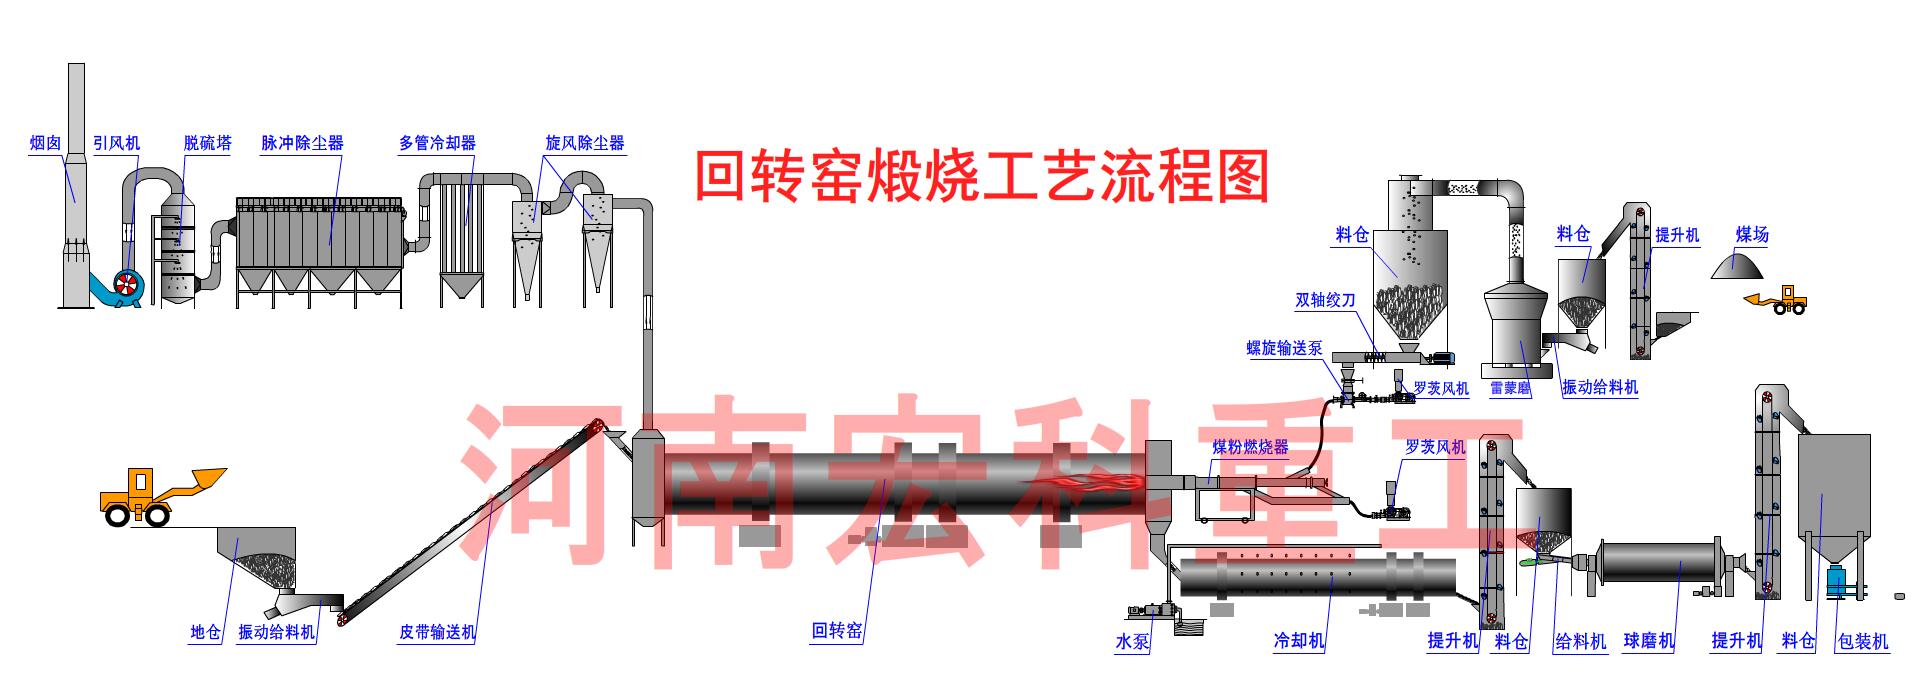 单段式煤气发生炉工艺流程图